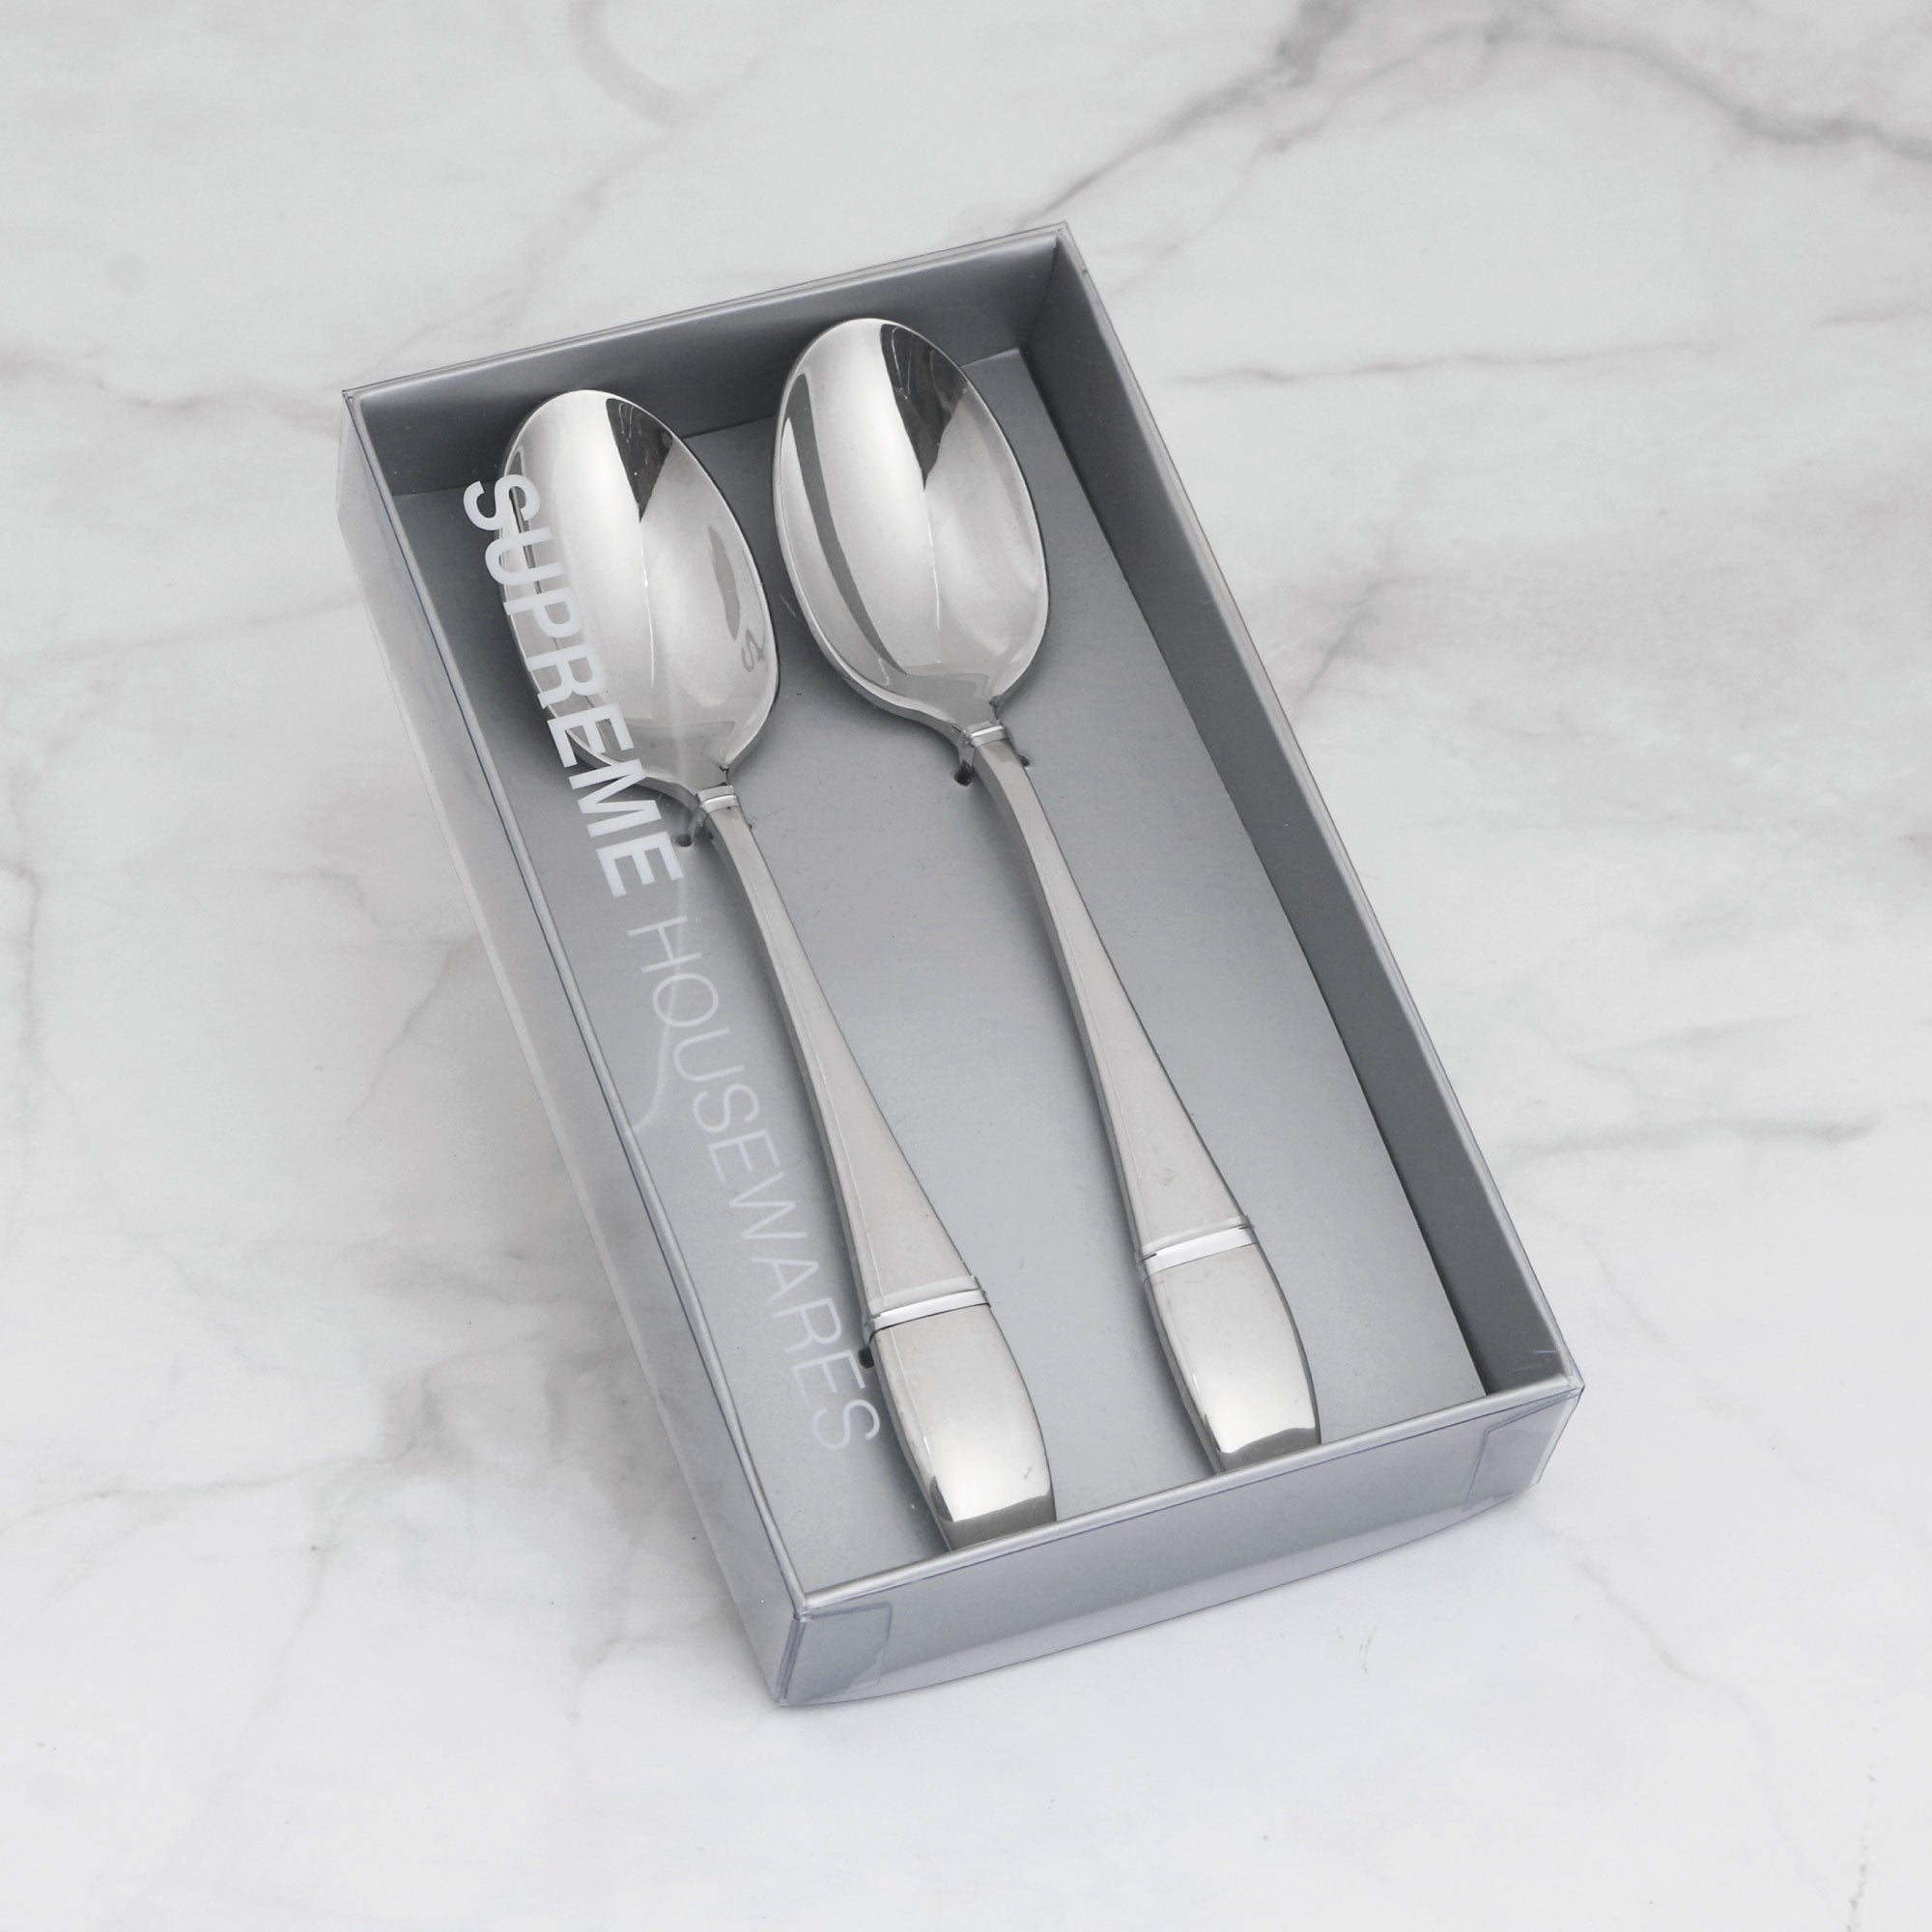 Stainless steel Spoons Vintage square head spoon ice cream spoons  Dinnerware LT392